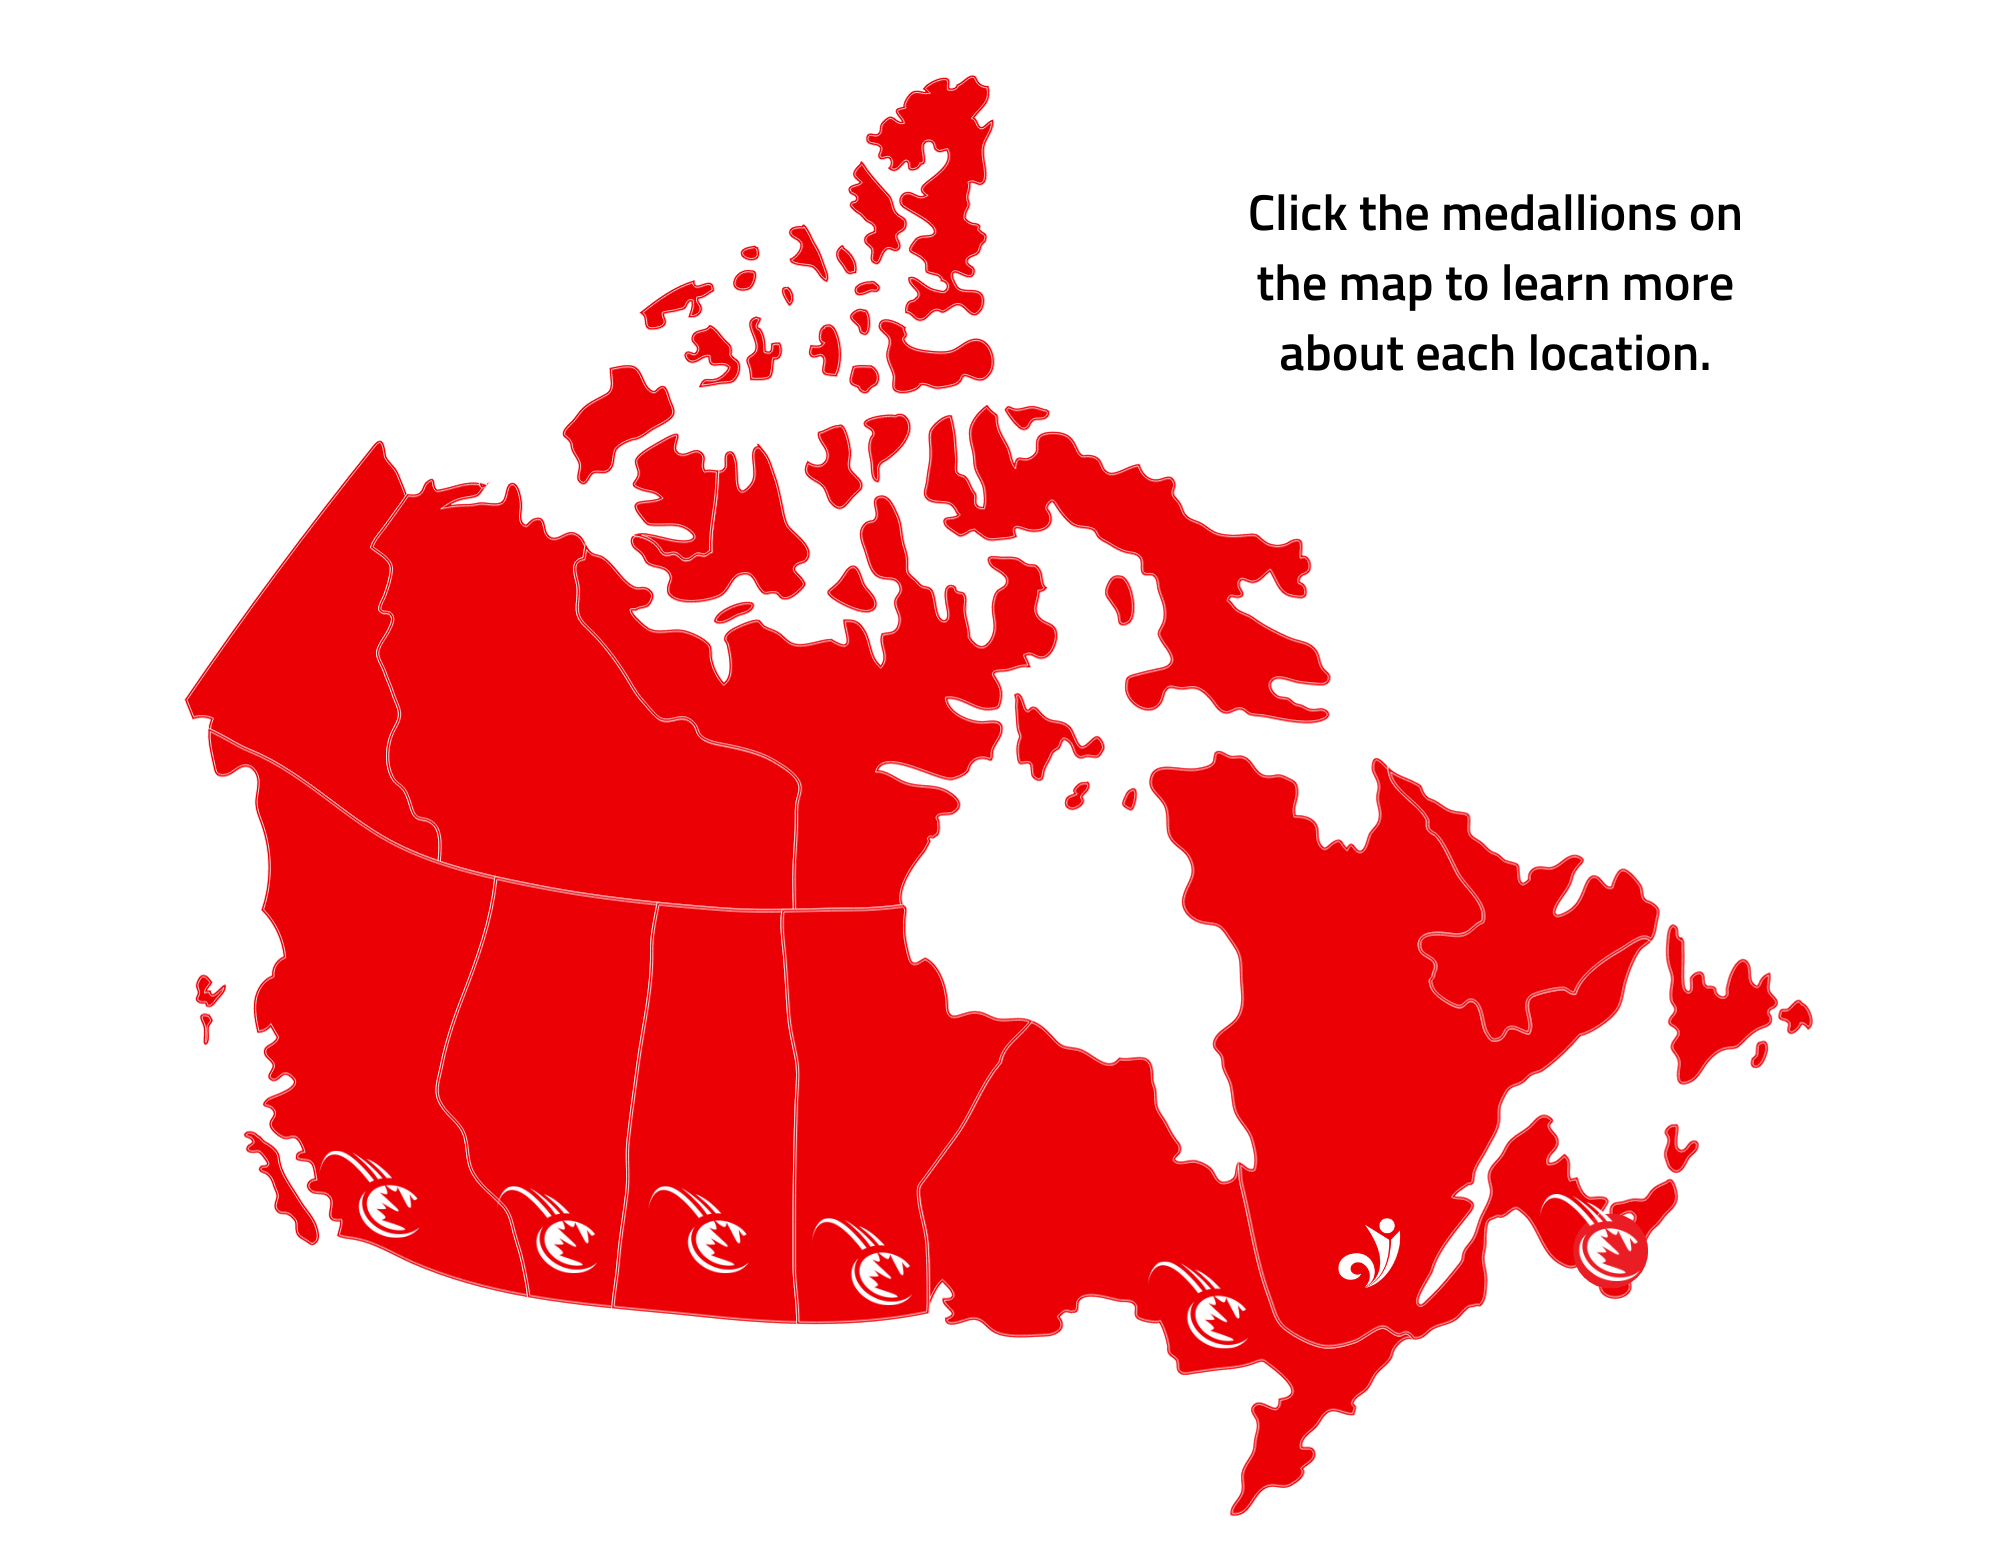 COPSIN LOCATIONS ACROSS CANADA